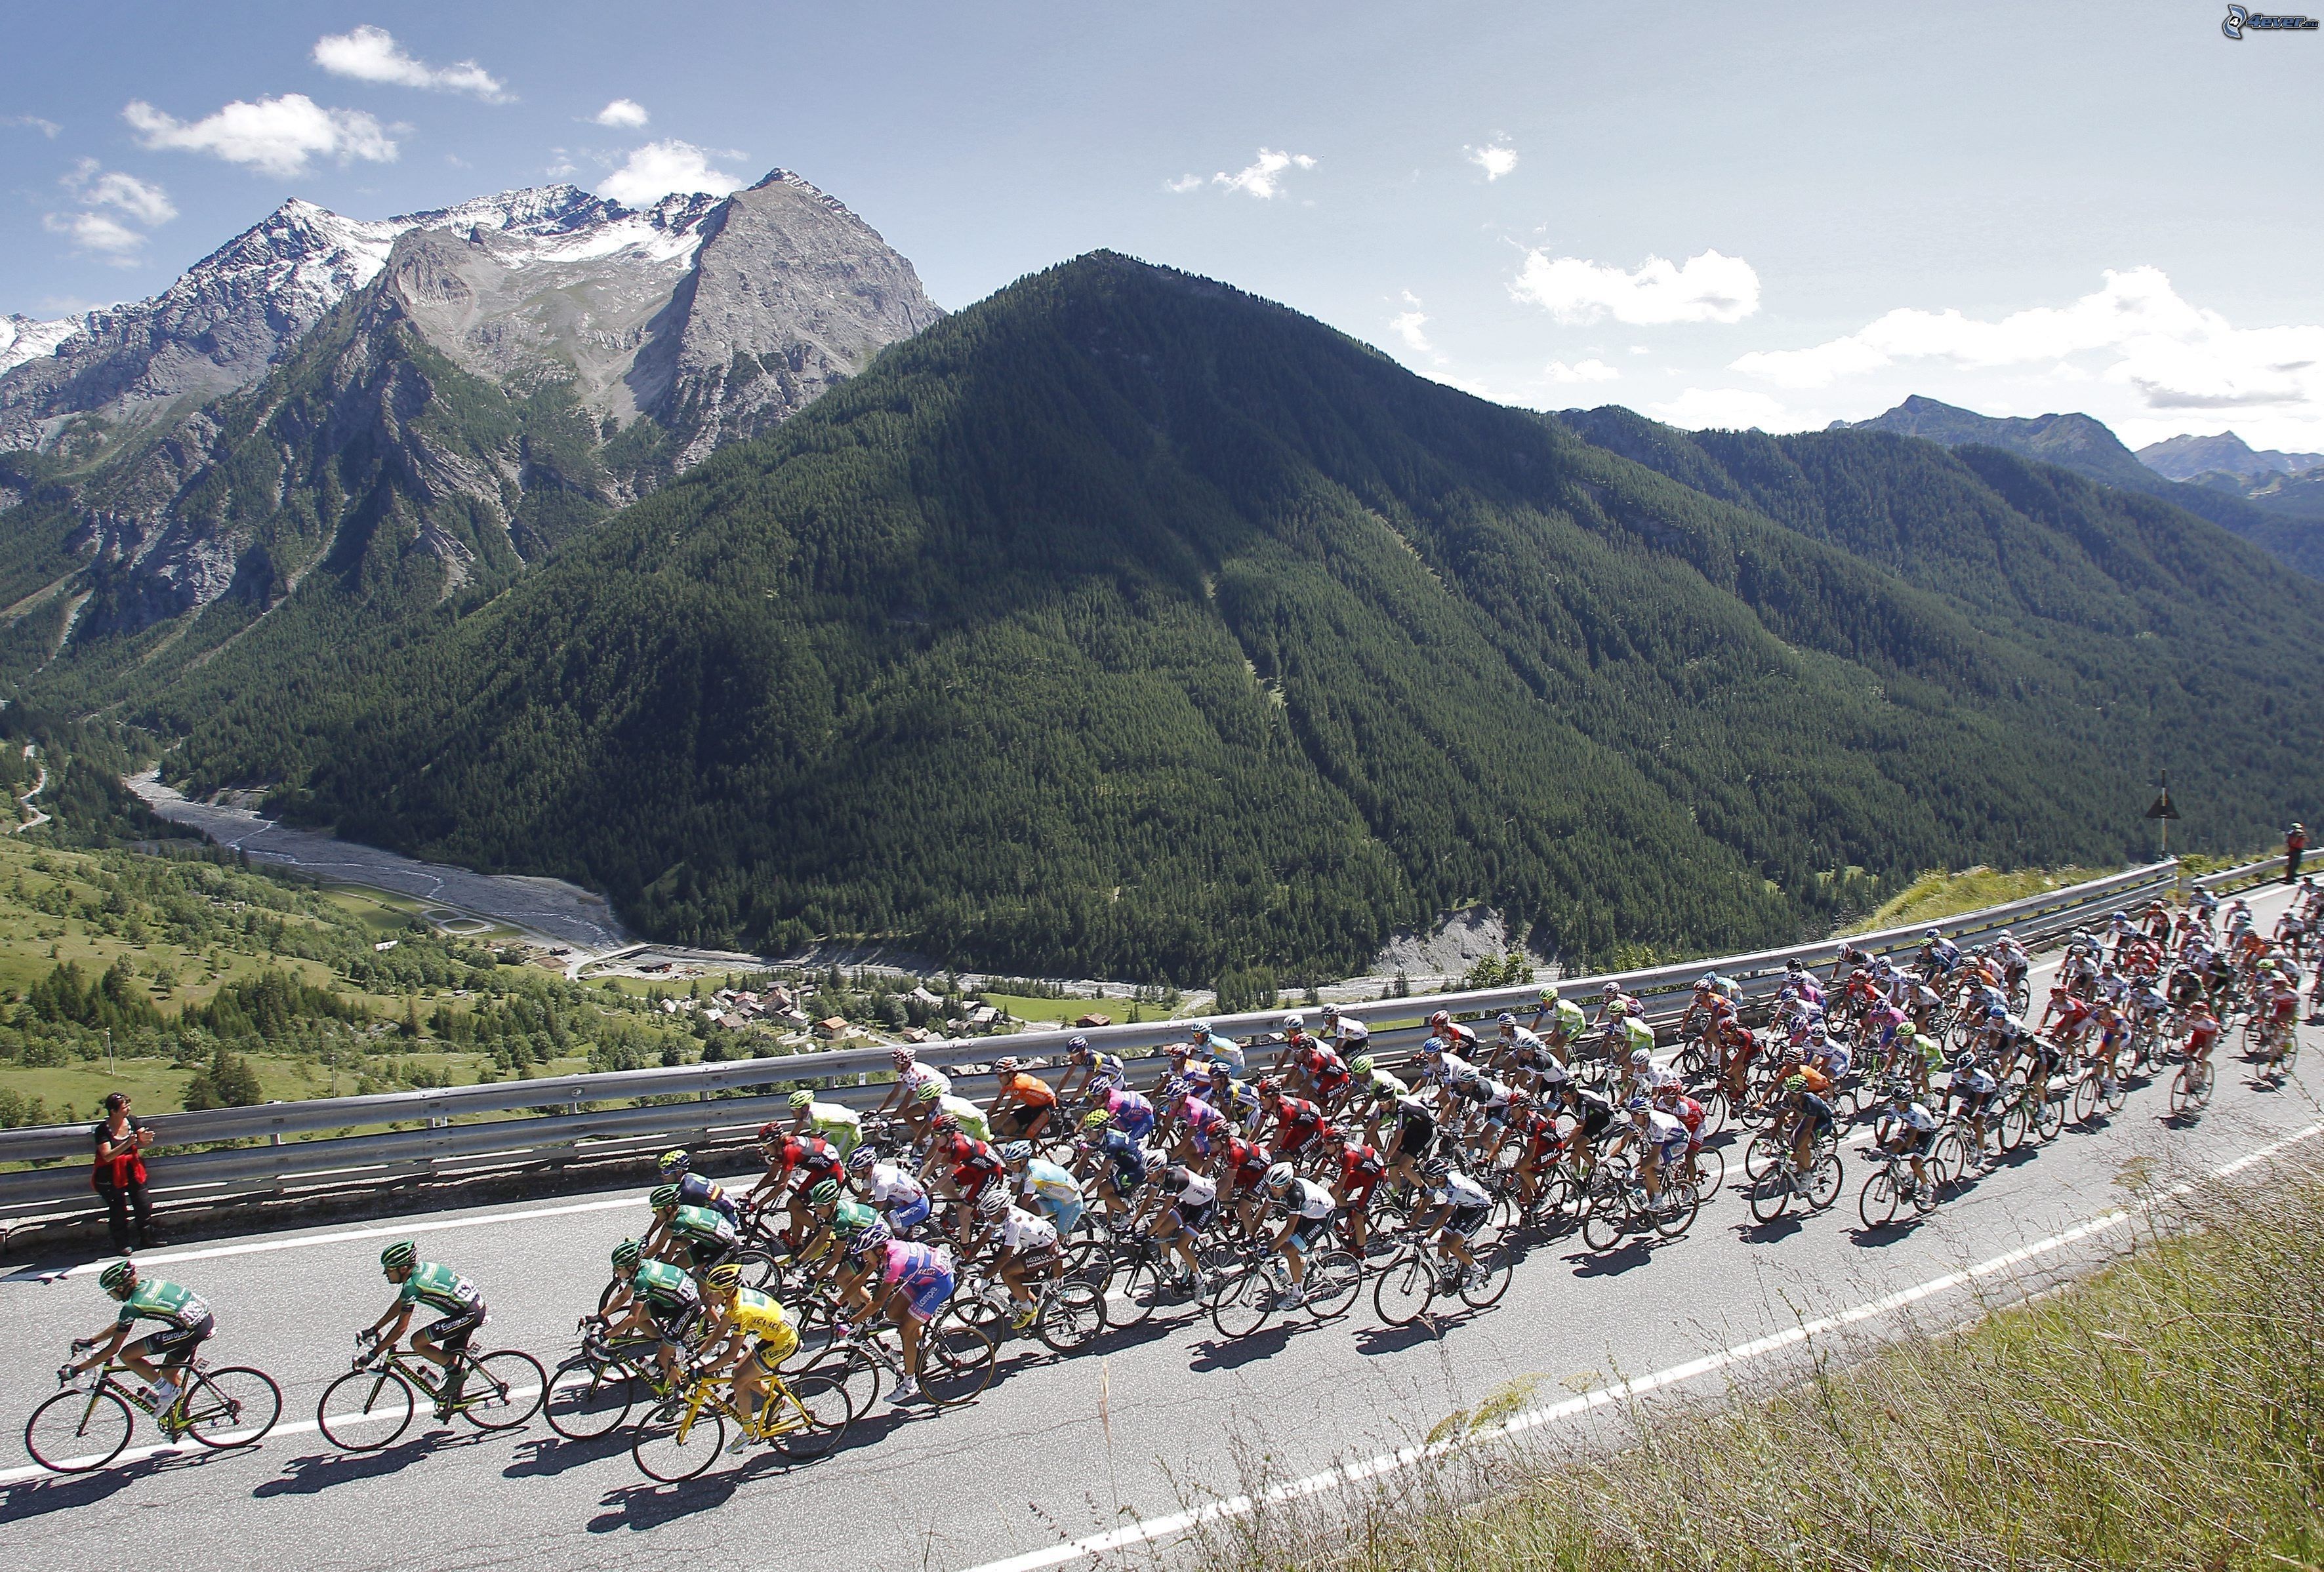 Tour de france, cyclists, hills, mountains, view, road 148555